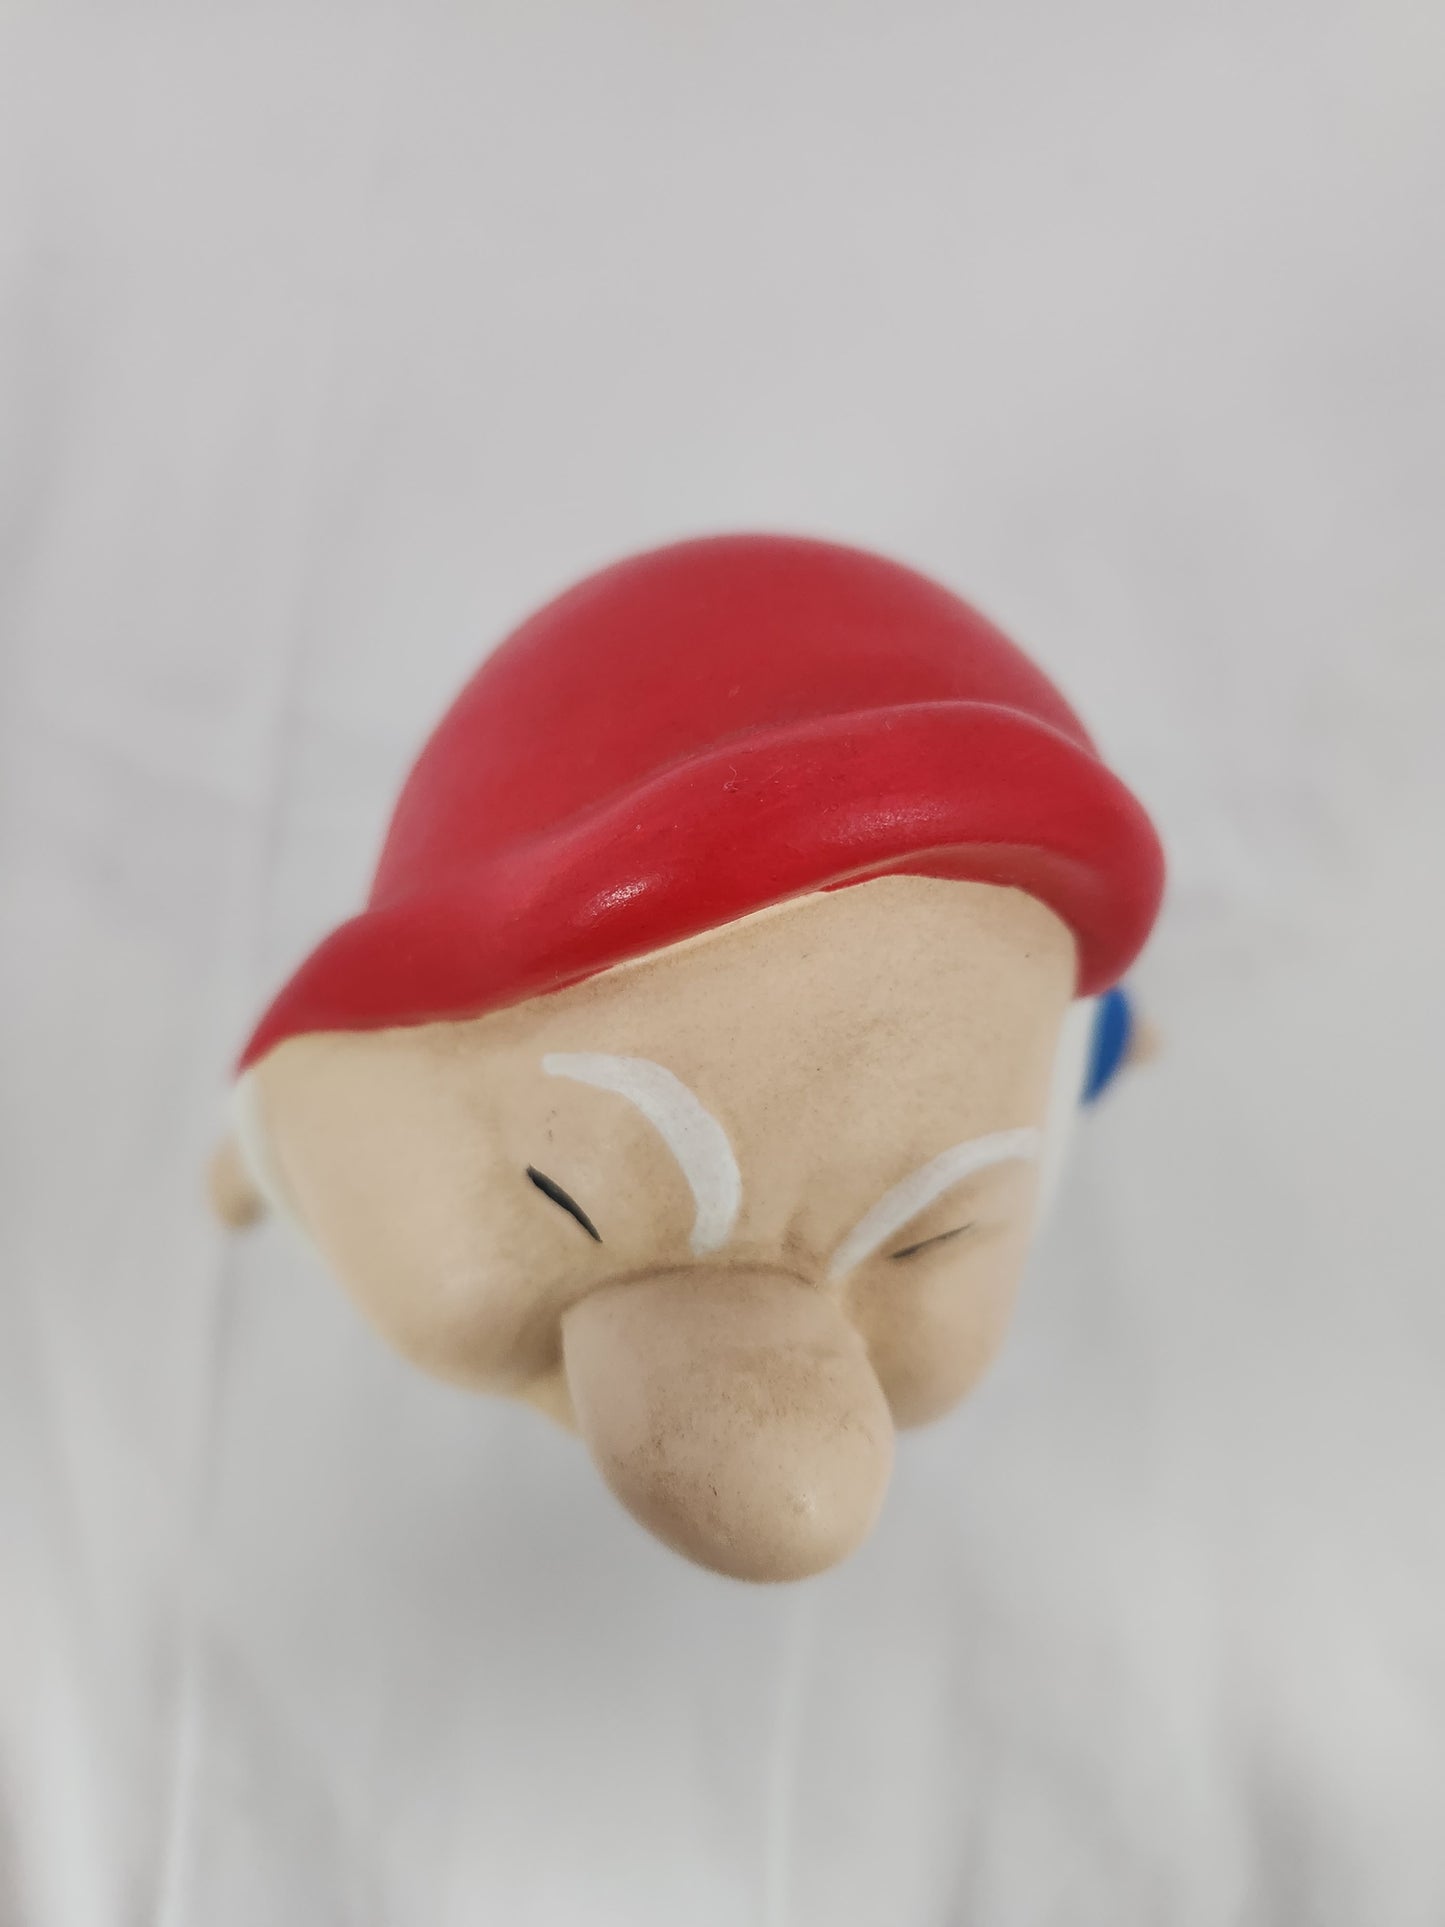 Walt Disney Snow White Seven Dwarfs Sneezy 8" Ceramic Figurine